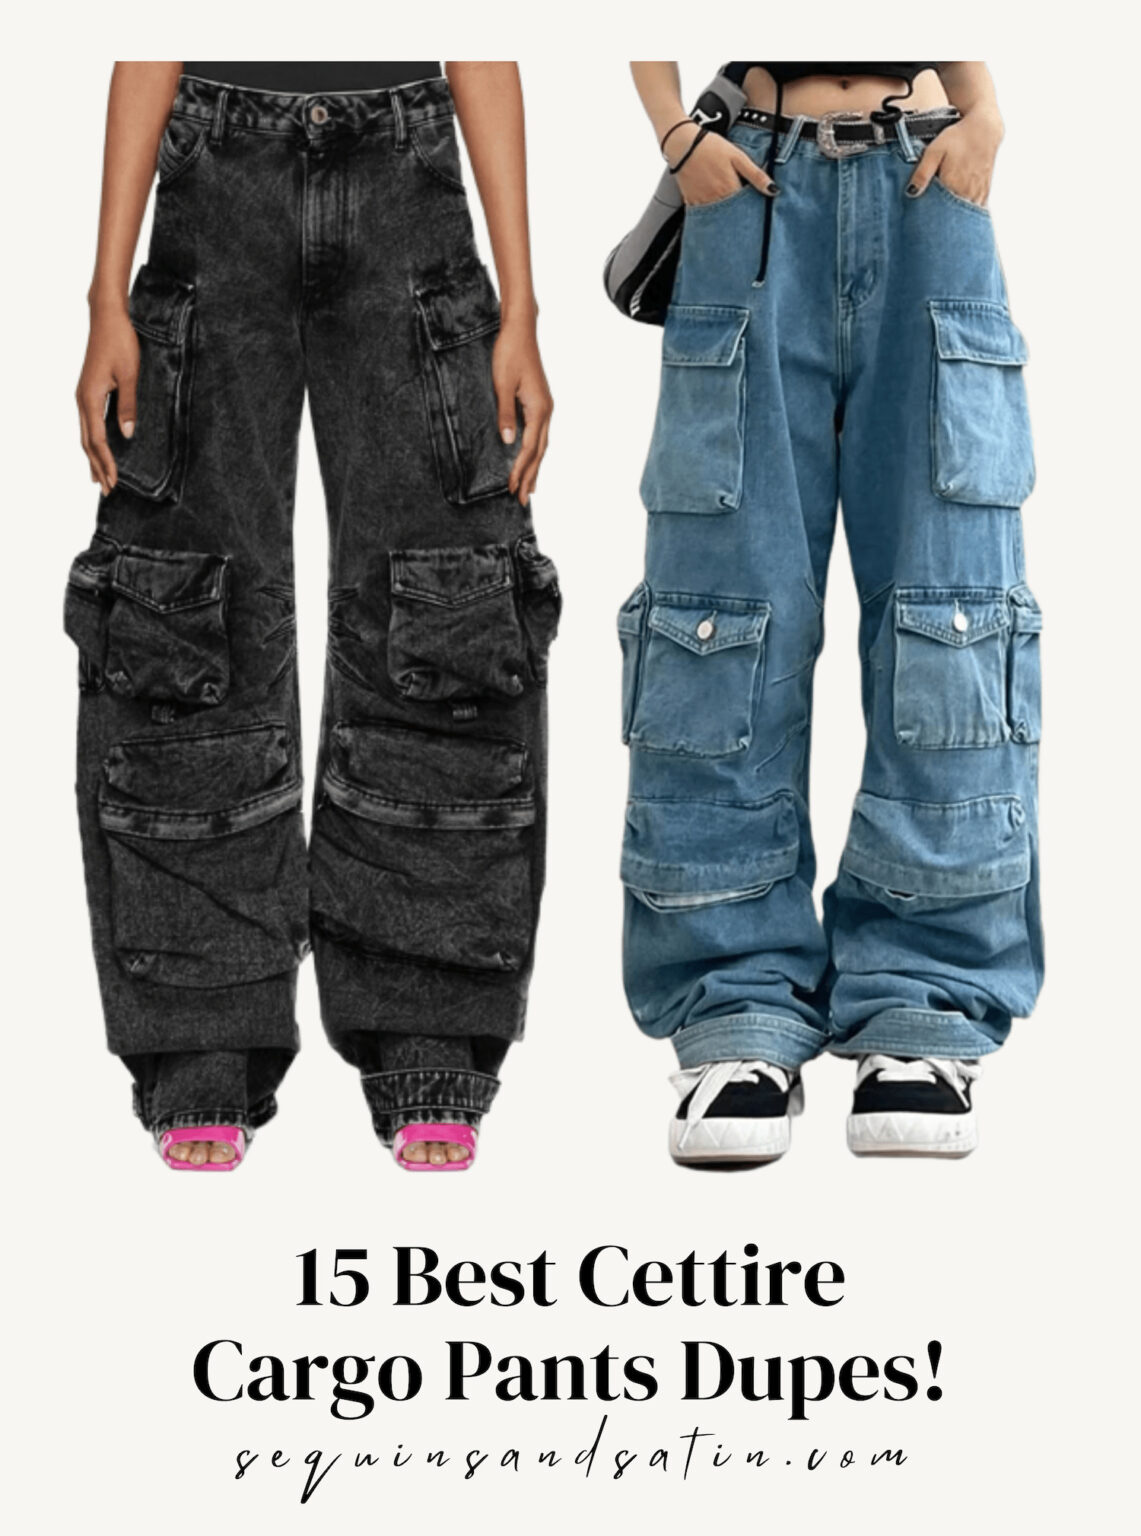 15 Best Cettire Cargo Pants Dupes! » Sequins & Satin